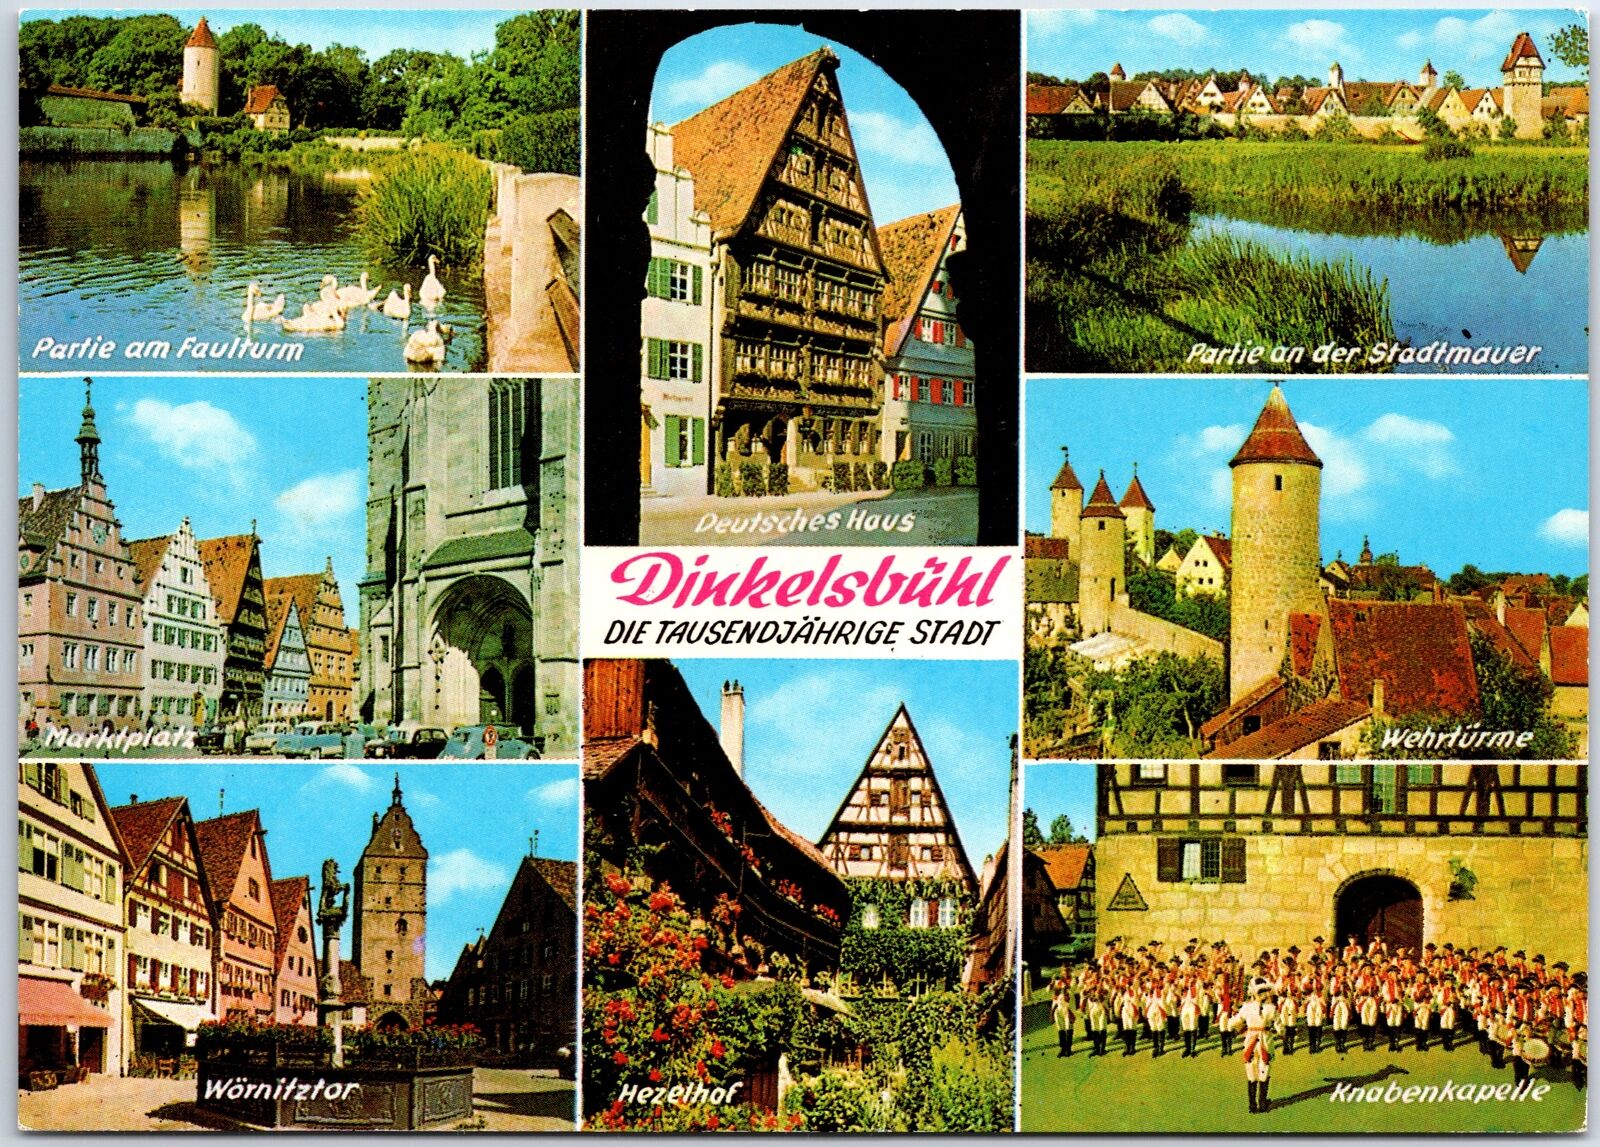 VINTAGE CONTINENTAL SIZE POSTCARD MULTIPLE SCENES AT DINKELSBUHL GERMANY 1970s